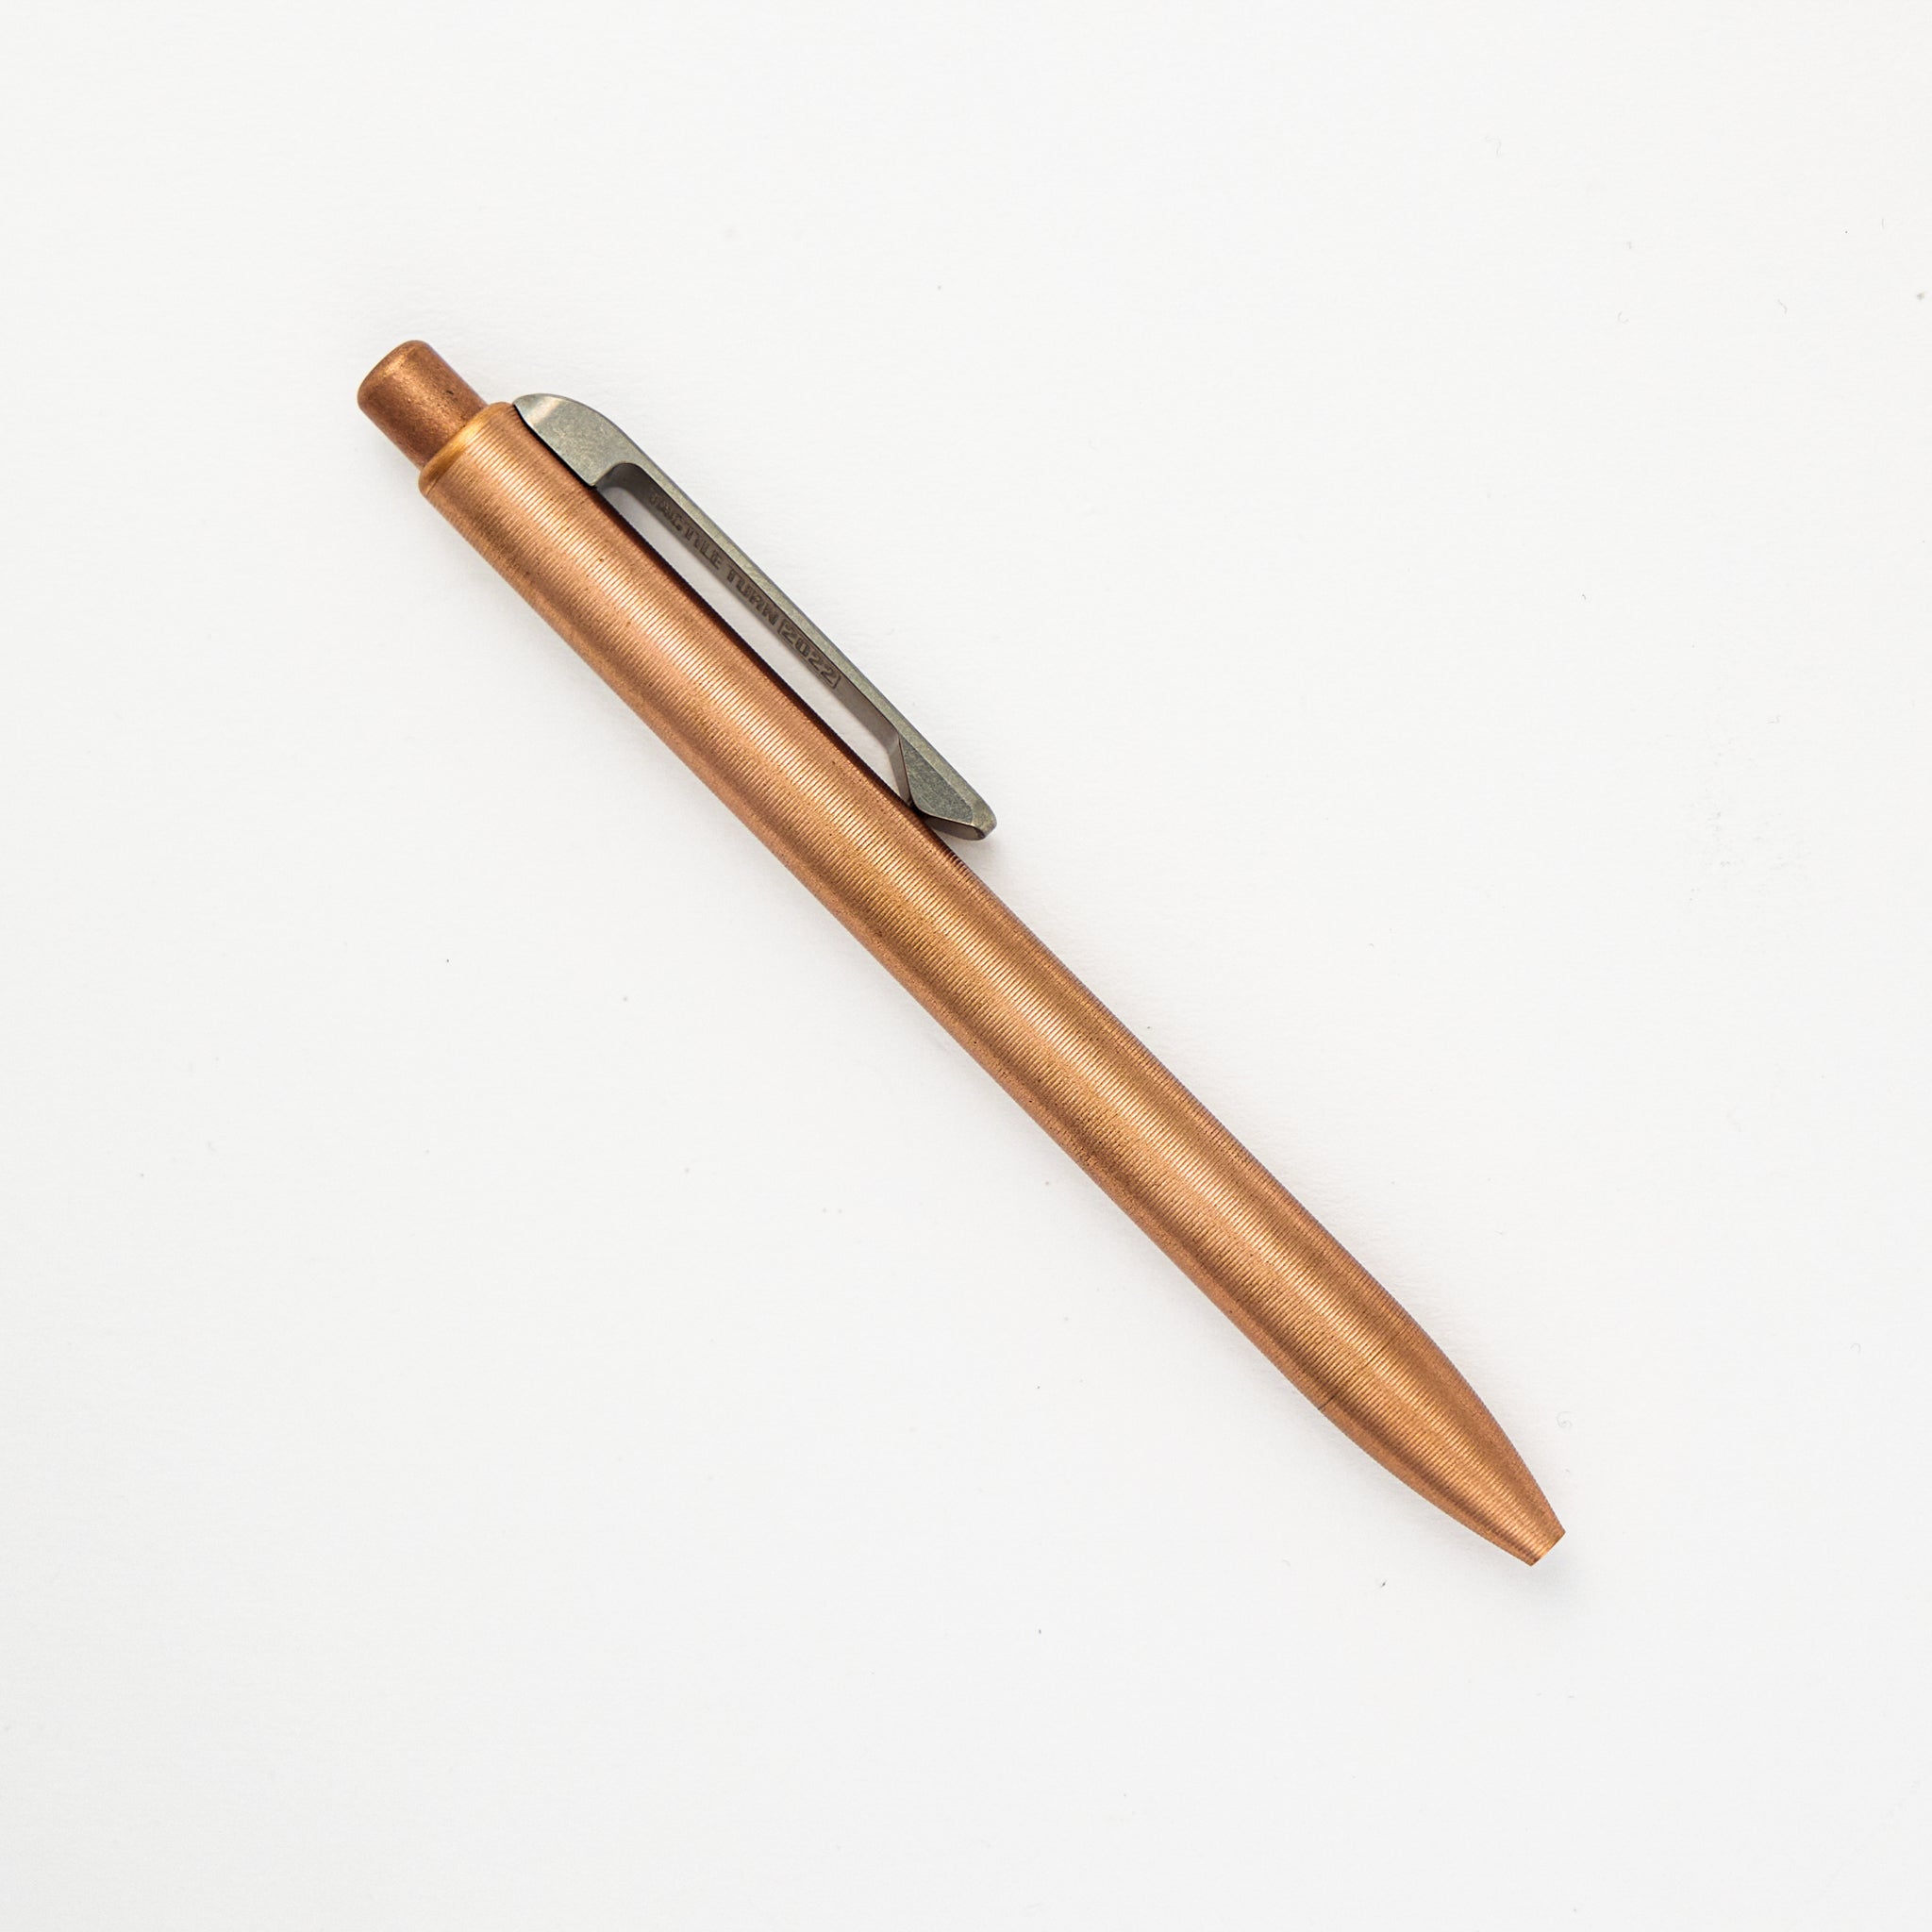 Tactile Turn Slim Side Click – Mini – Copper